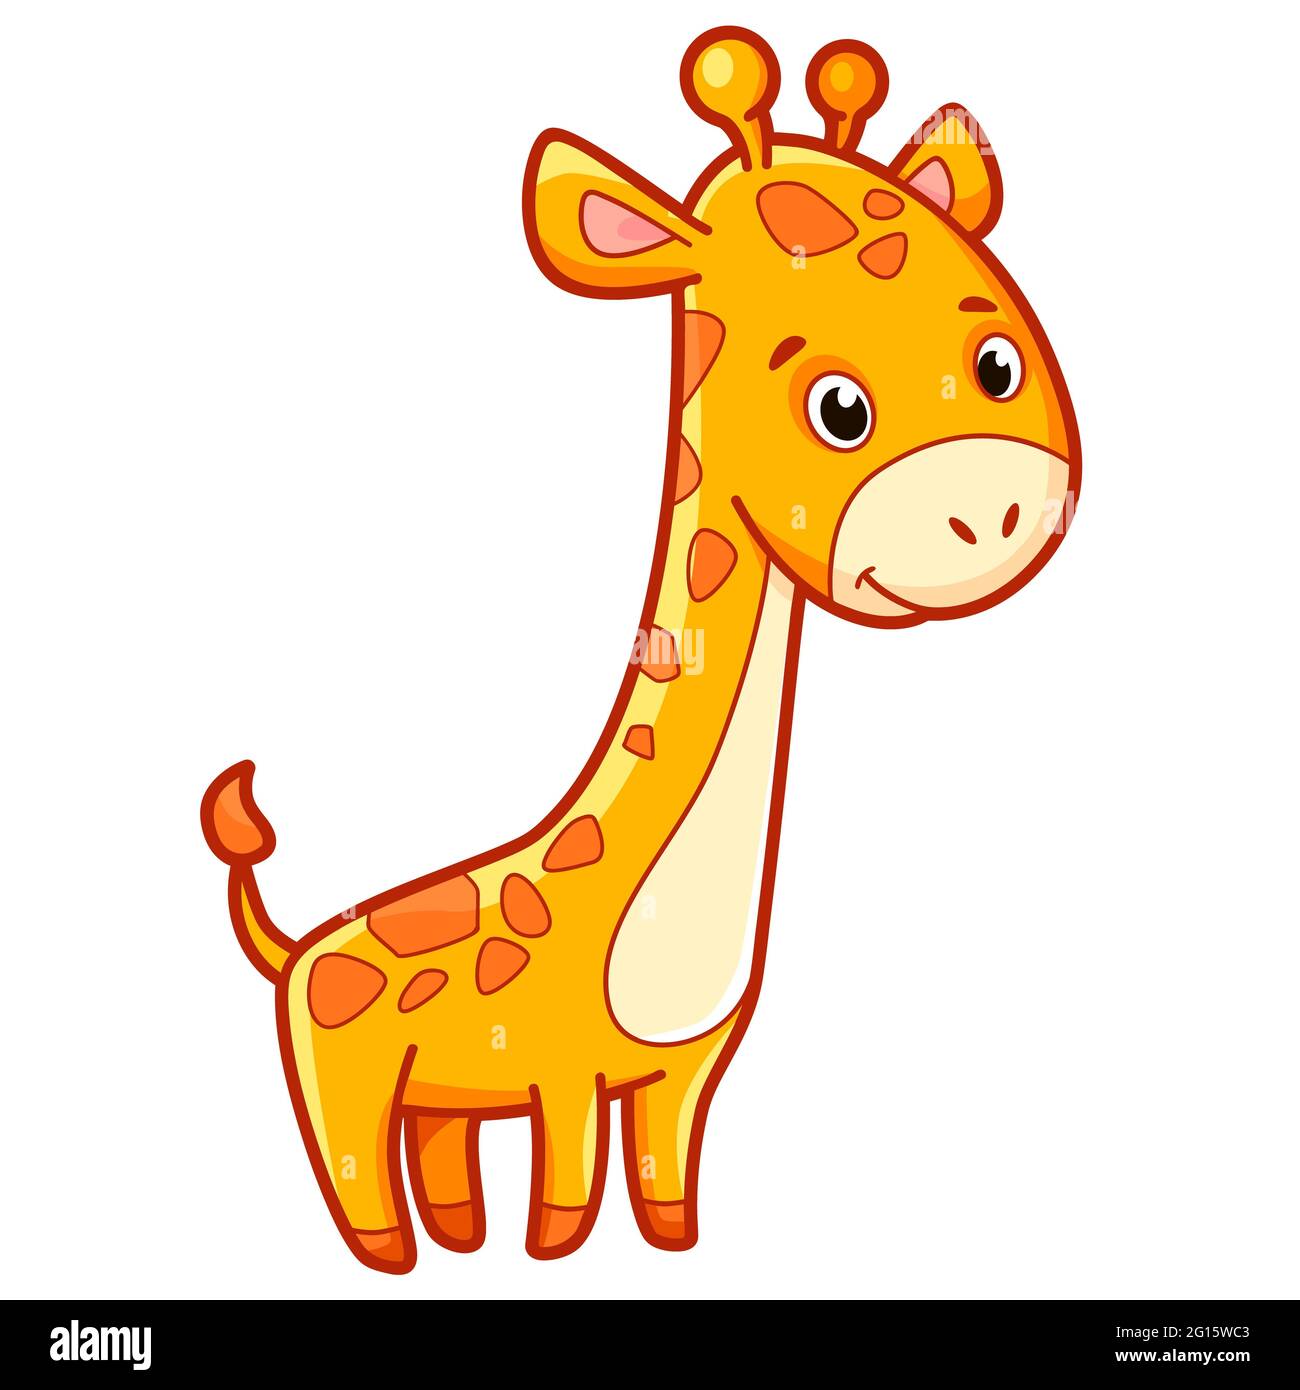 Cute giraffe cartoon. Giraffe clipart illustration Stock Photo - Alamy